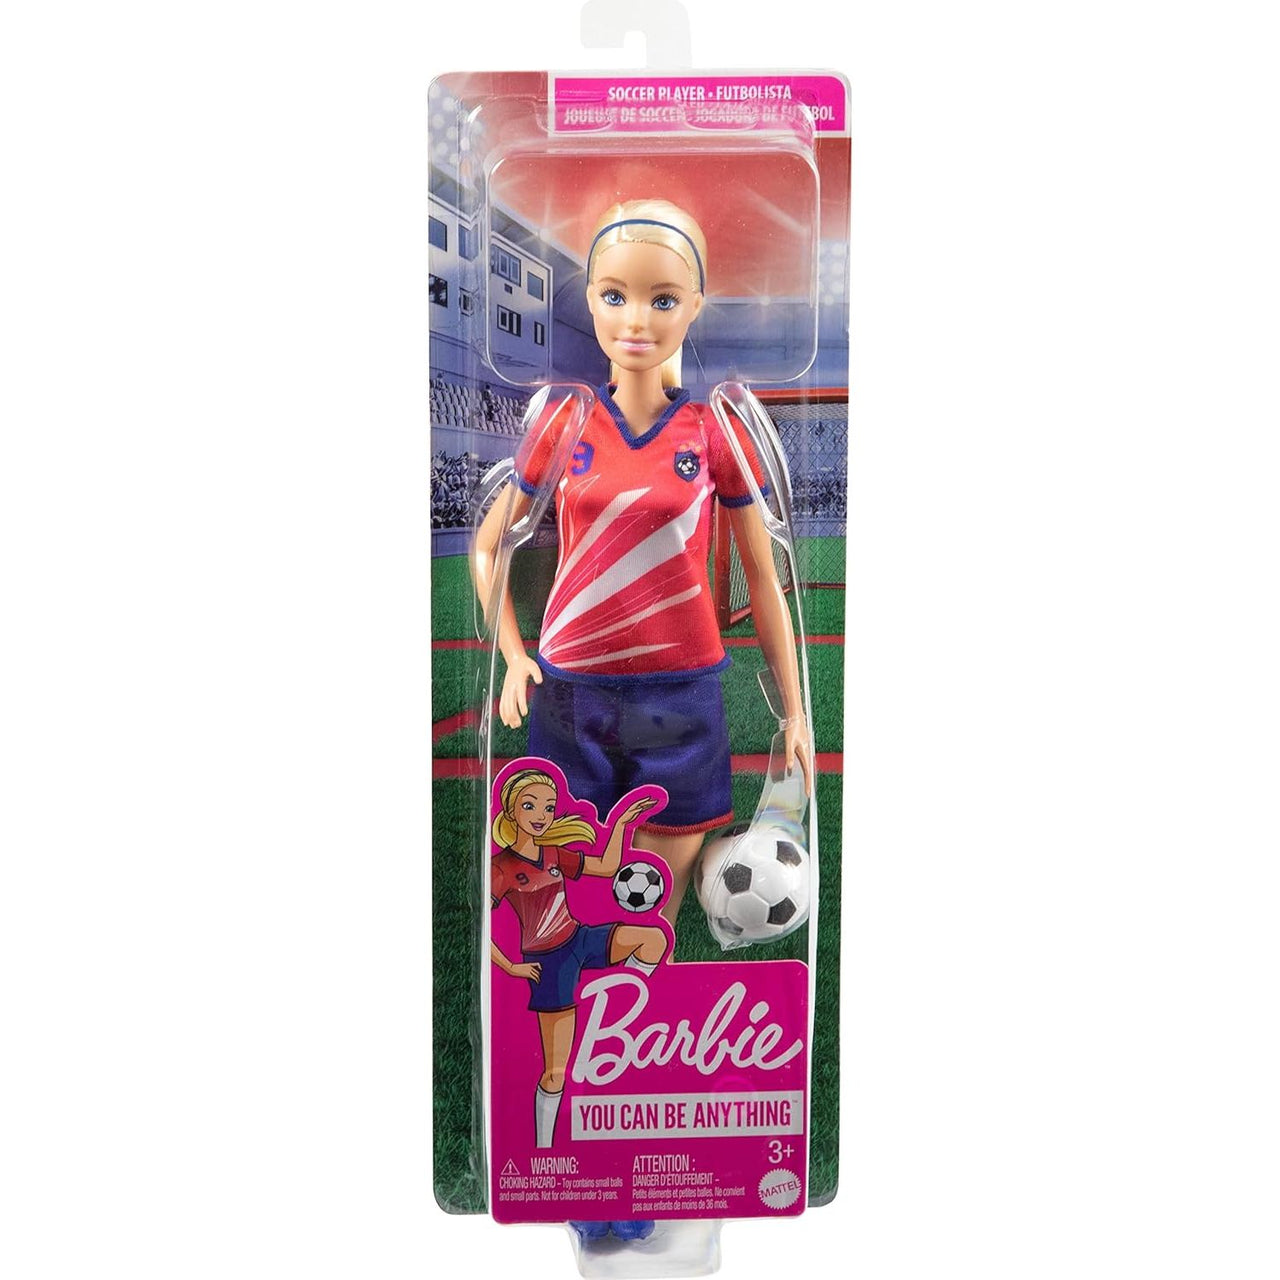 Barbie Footballer Doll Barbie